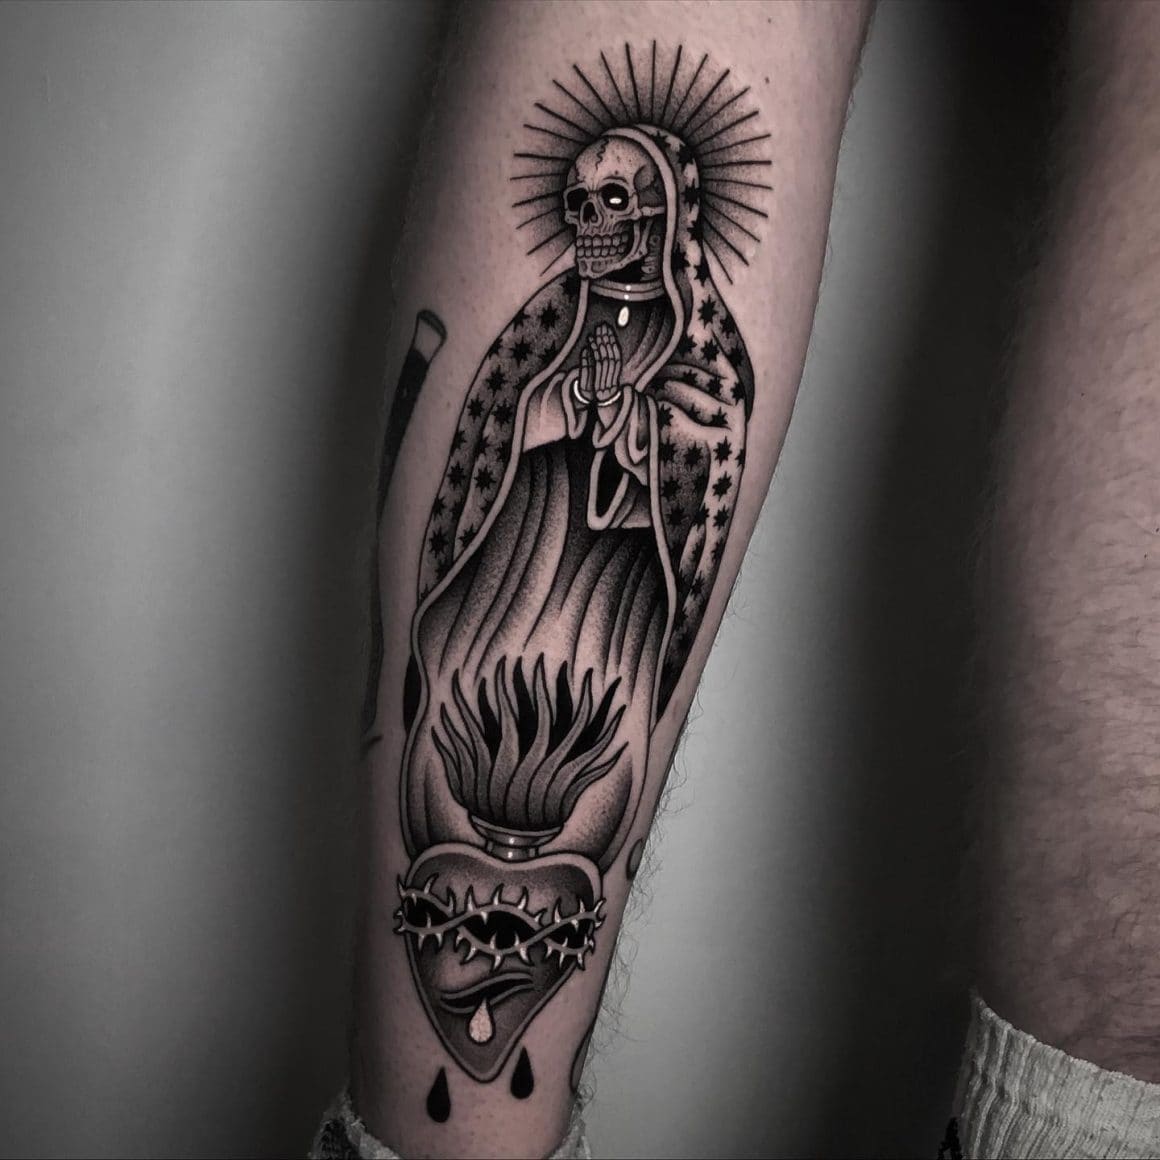 La Santa Muerte kristianatattoo  skeleton santa death muerte  tattoo tattoos tattoosofinstagram ink inked inktattoo  Instagram